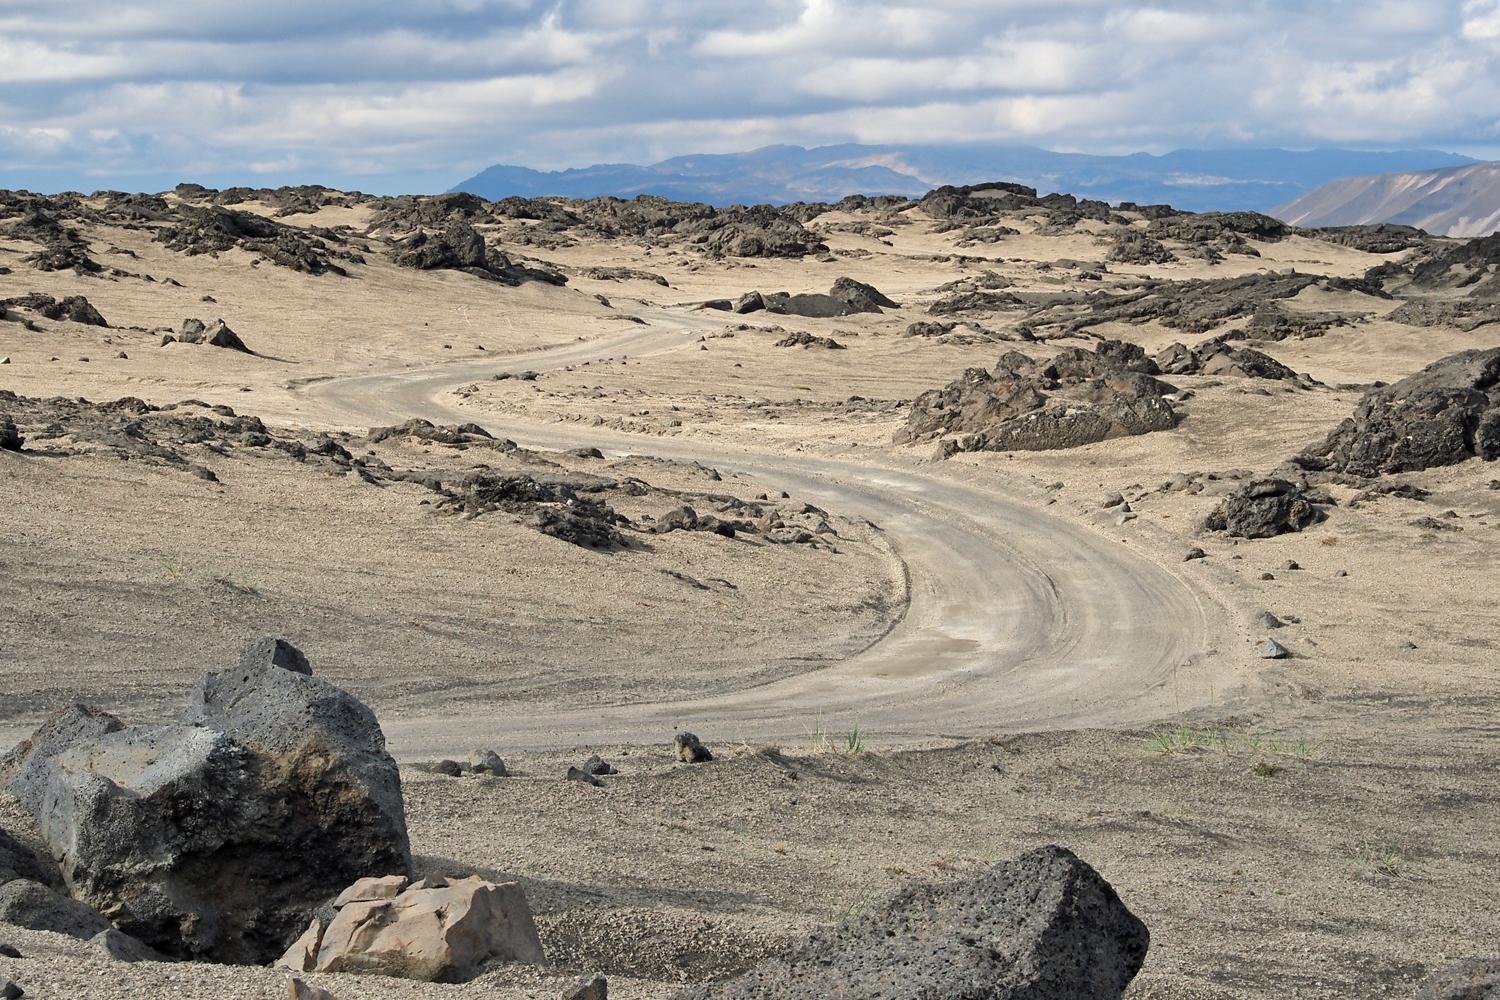 Eine sandige Straße führt durch eine karge Landschaft durchbrochen von schwarzen Felsen.